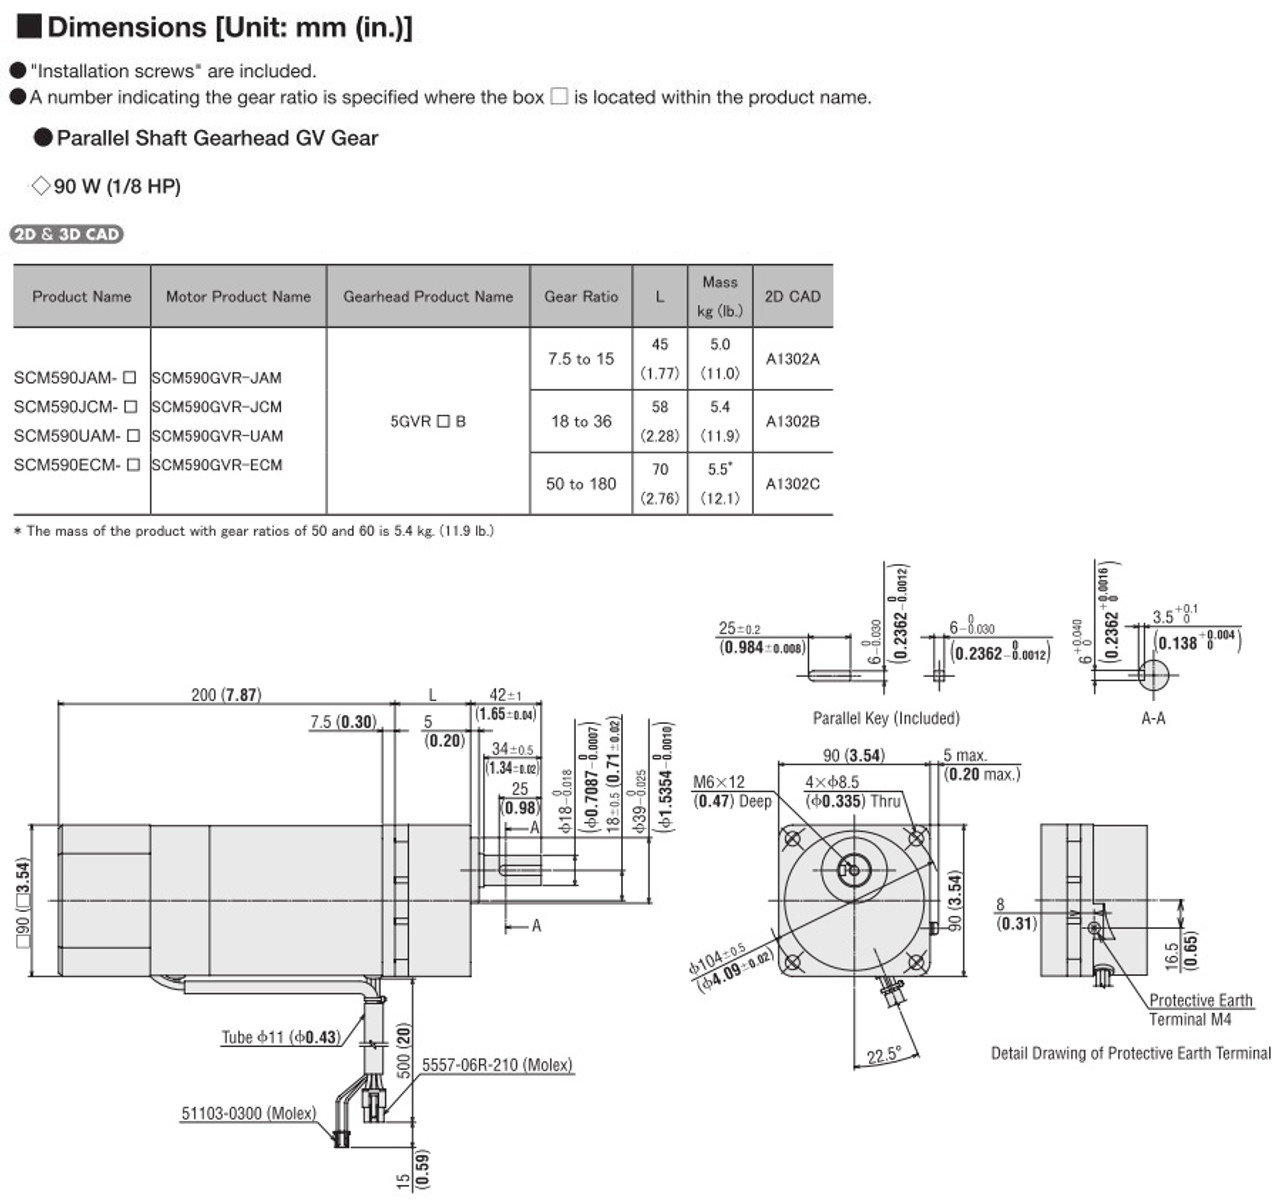 SCM590ECM-12.5 - Dimensions